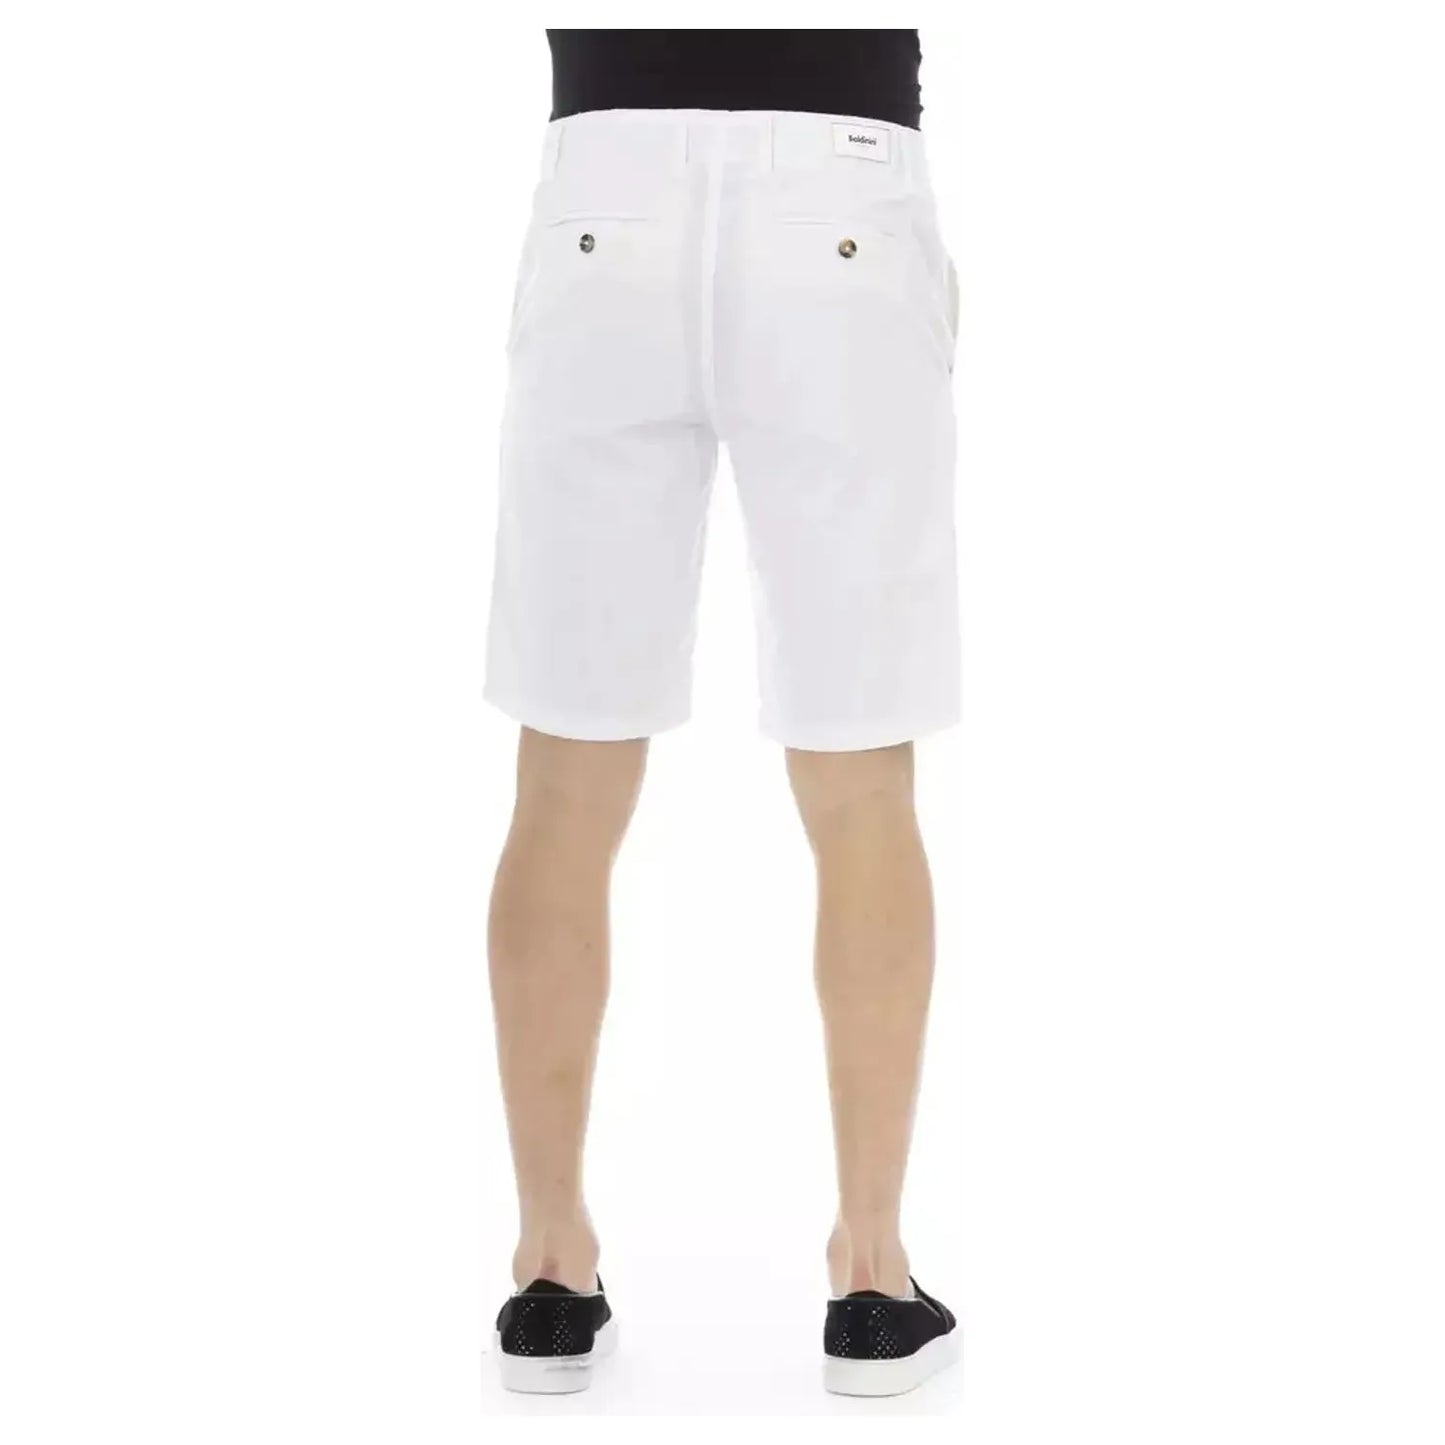 Baldinini Trend Elegant White Bermuda Shorts for Men white-cotton-short-7